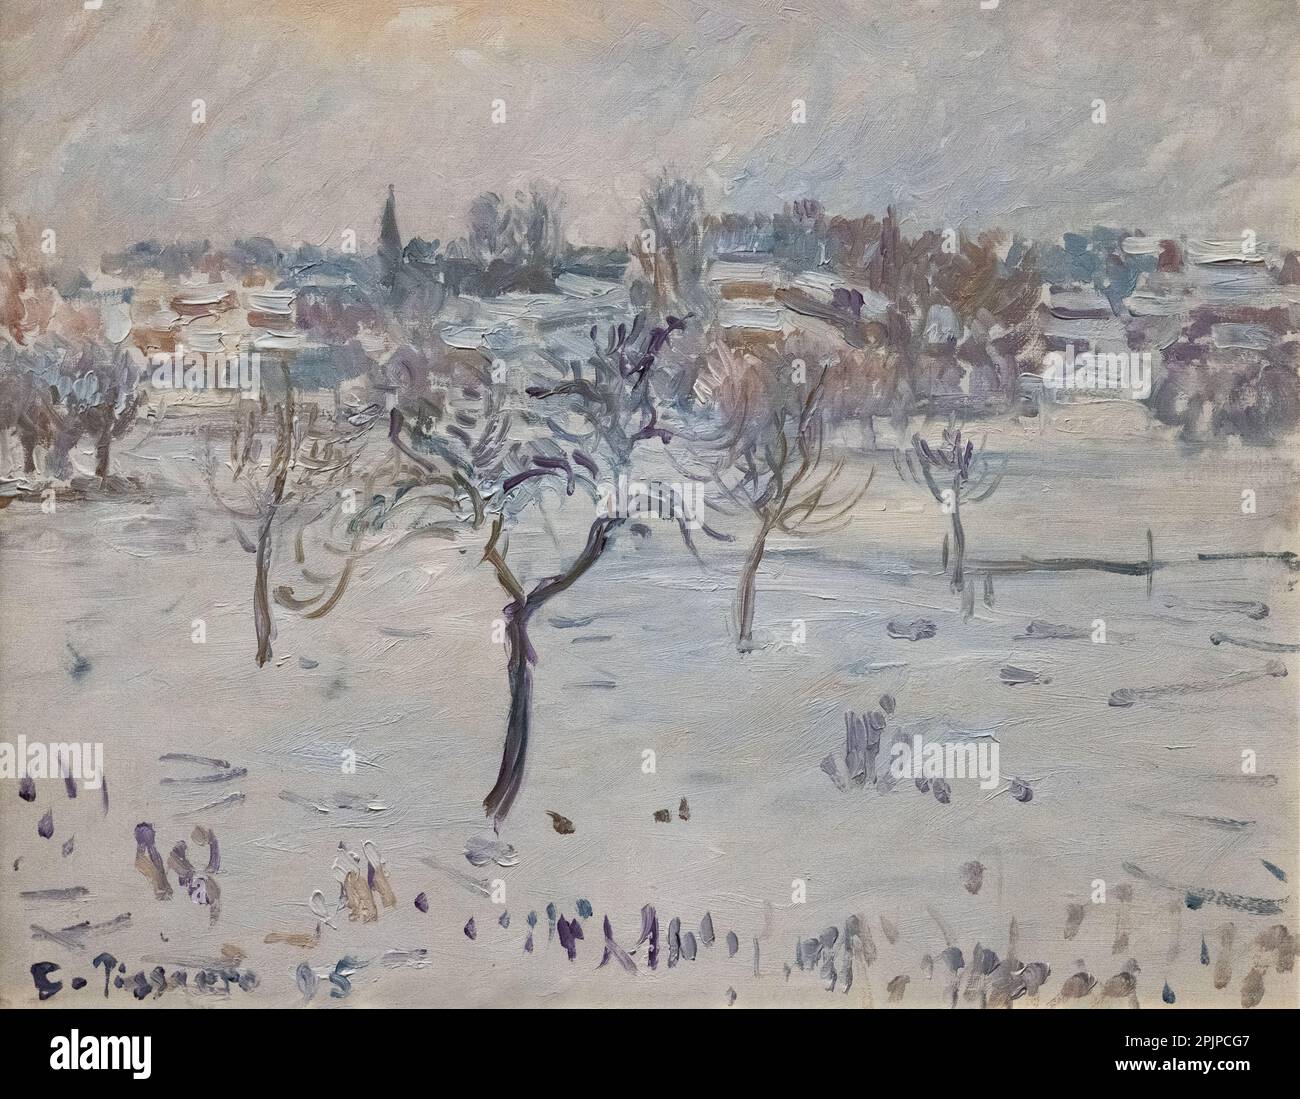 Gemälde von Camille Pissarro; verschneite Landschaft bei Eragny mit Apfelbaum; 1895; impressionistischer Maler aus dem 19. Jahrhundert. Winterlandschaftsmalereien. Stockfoto